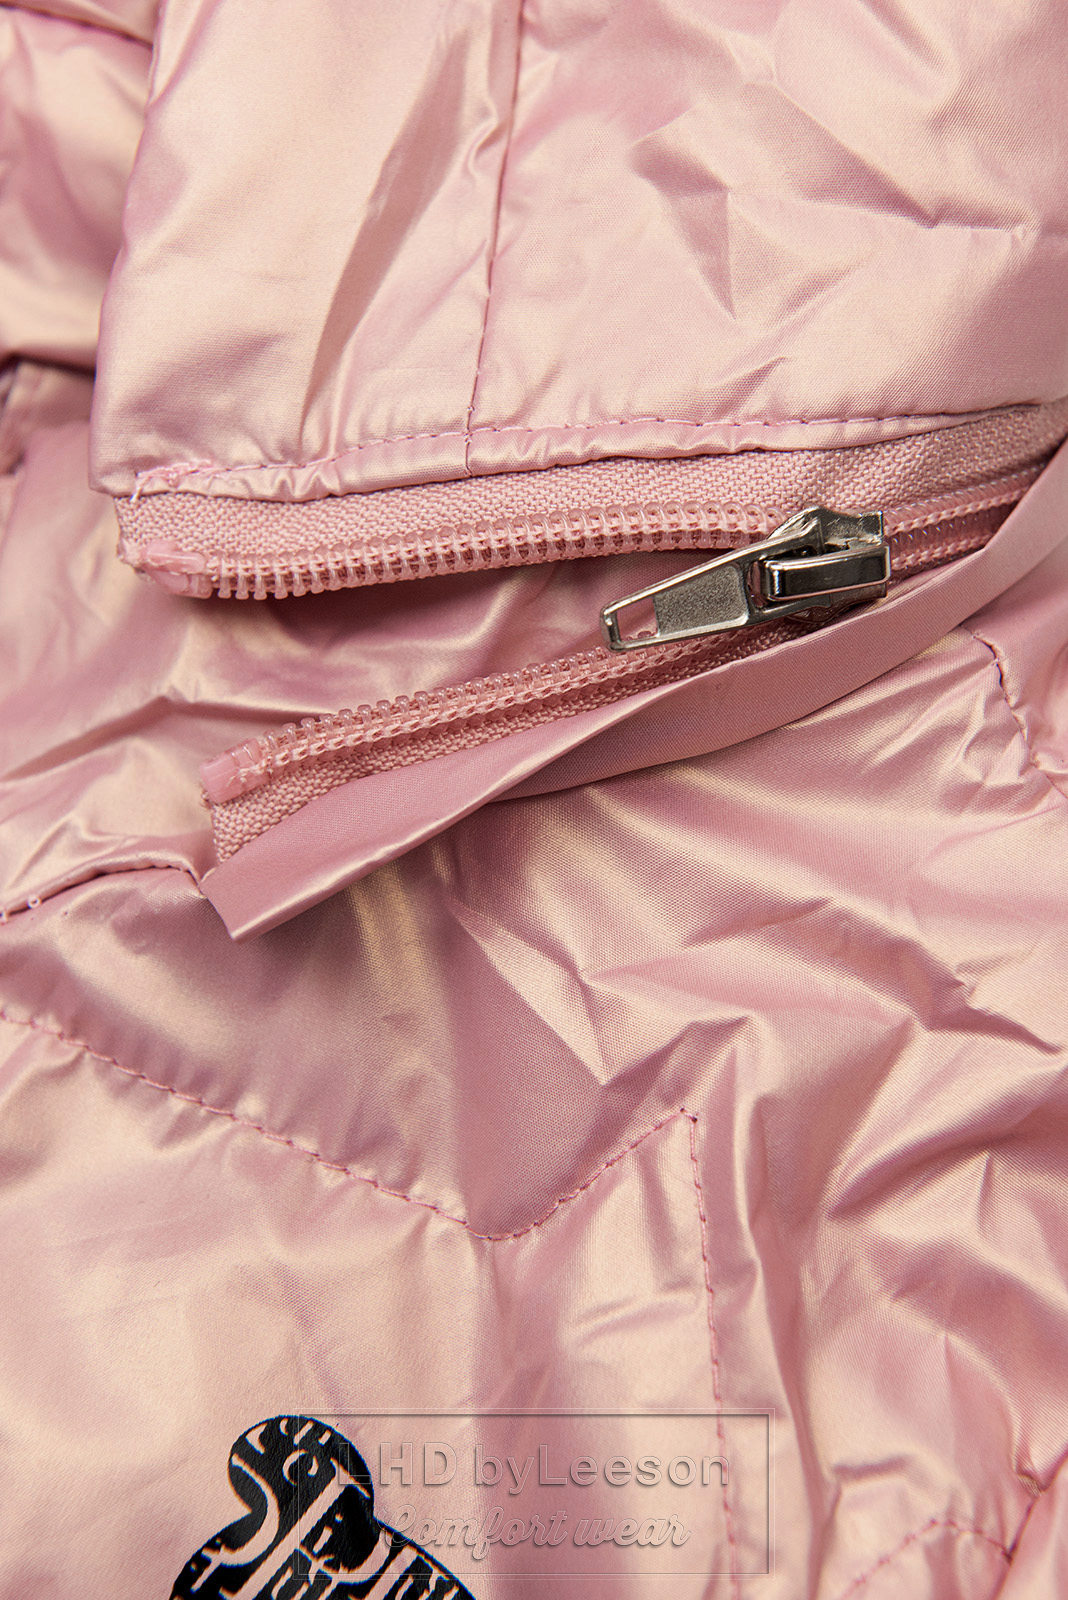 Różowa pikowana kurtka